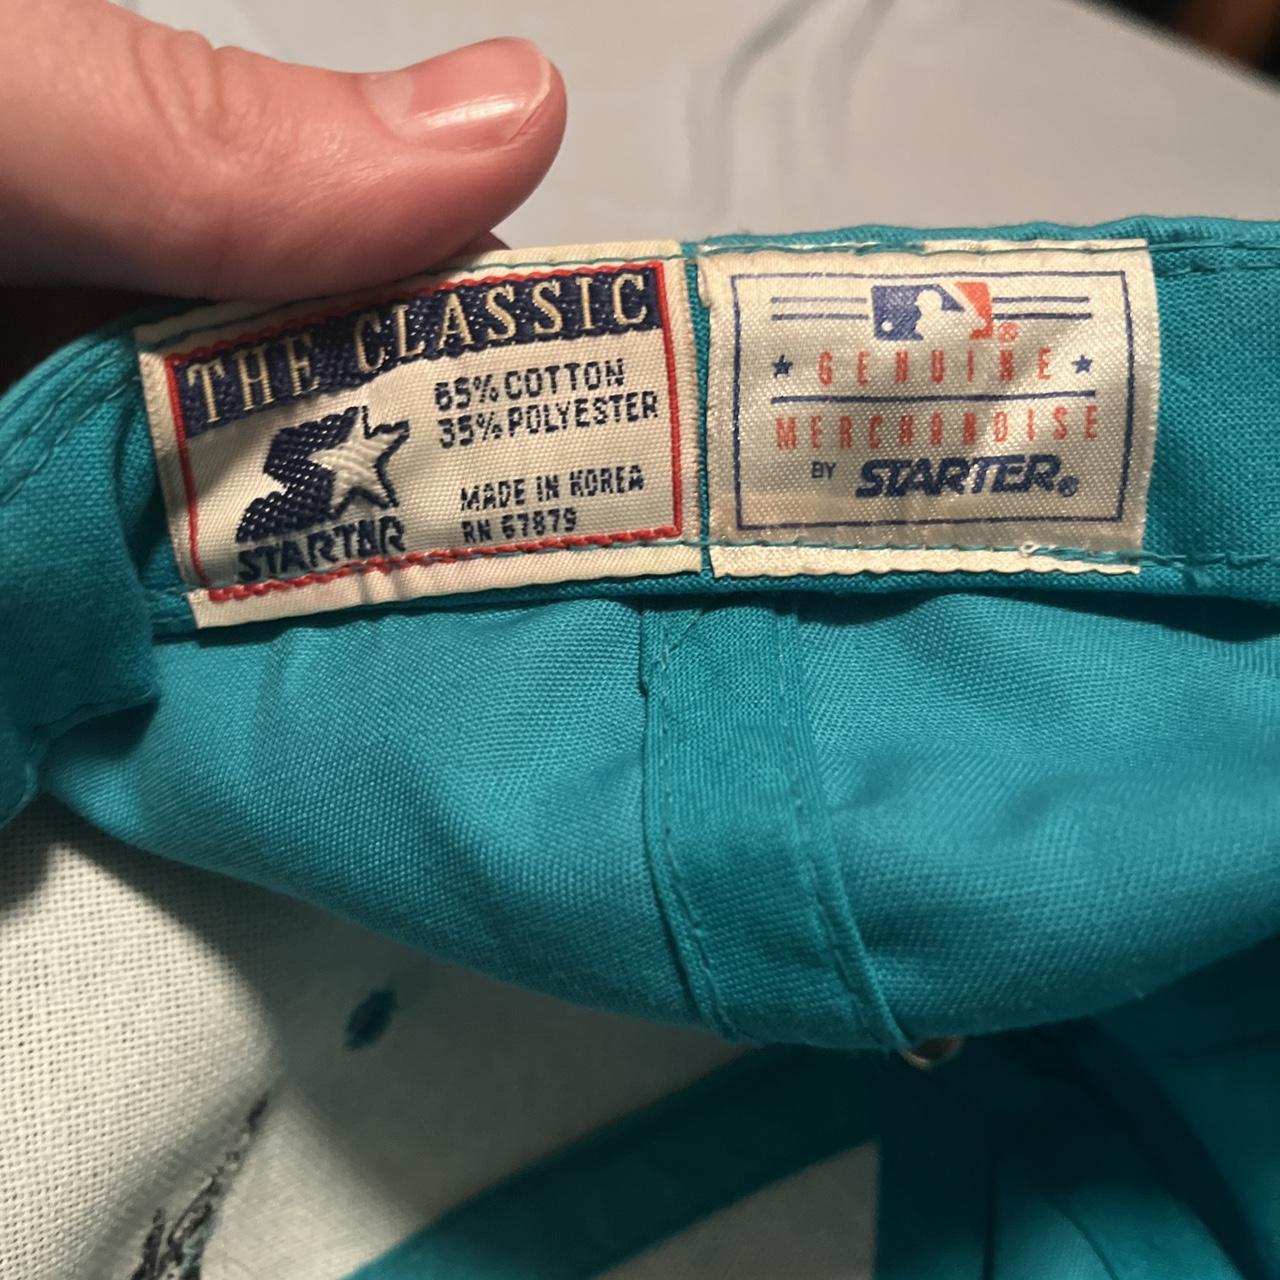 Vintage Starter Florida Marlins Teal 90s Baseball - Depop